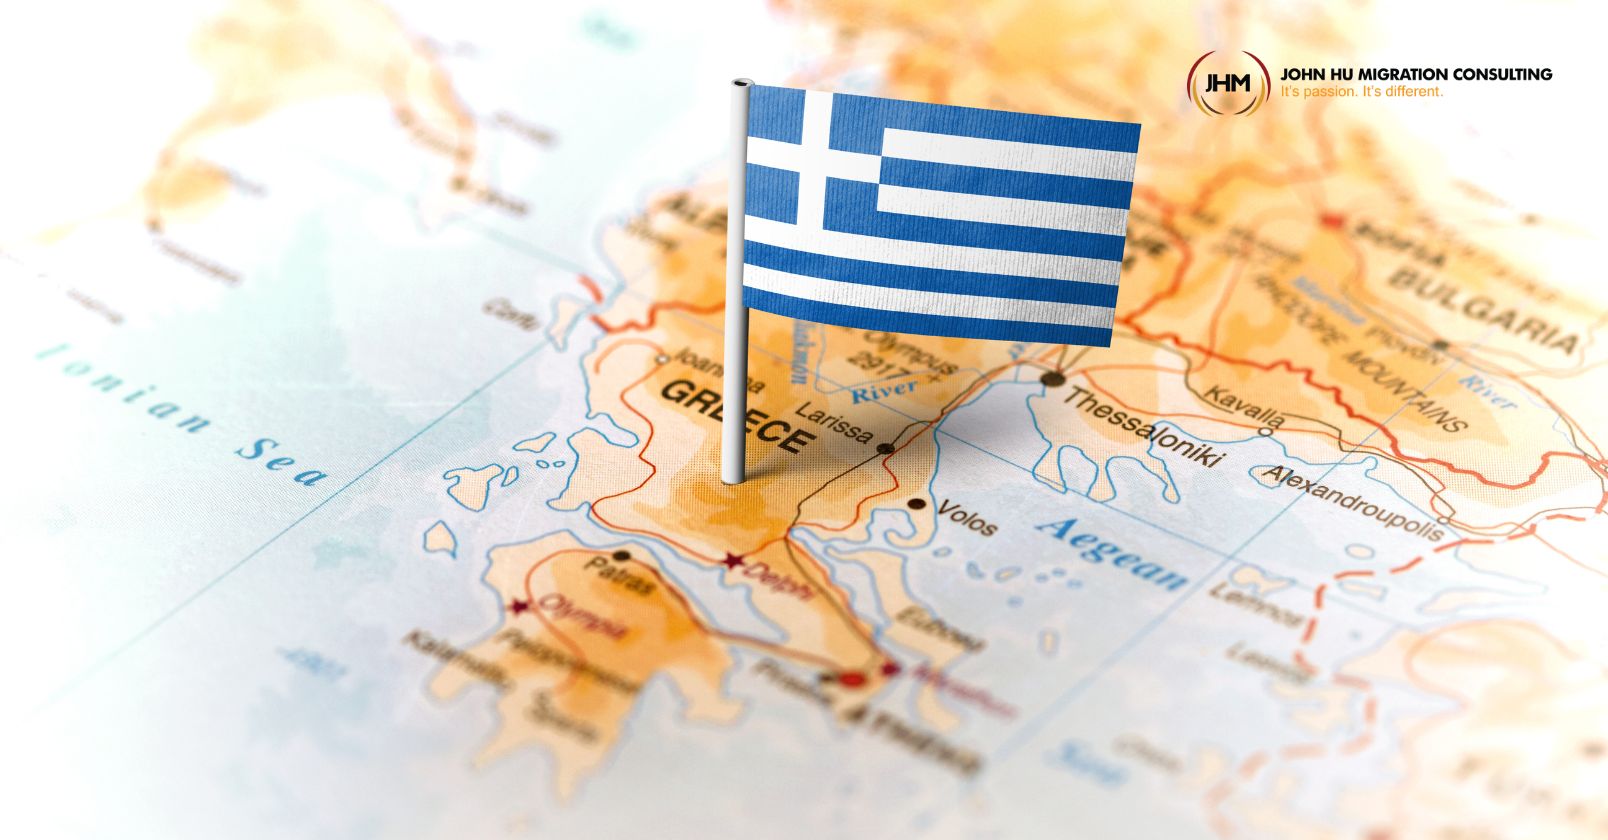 Chương trình Golden Visa Hy Lạp tăng mức đầu tư tối thiểu lấy thường trú nhân_John Hu Migration